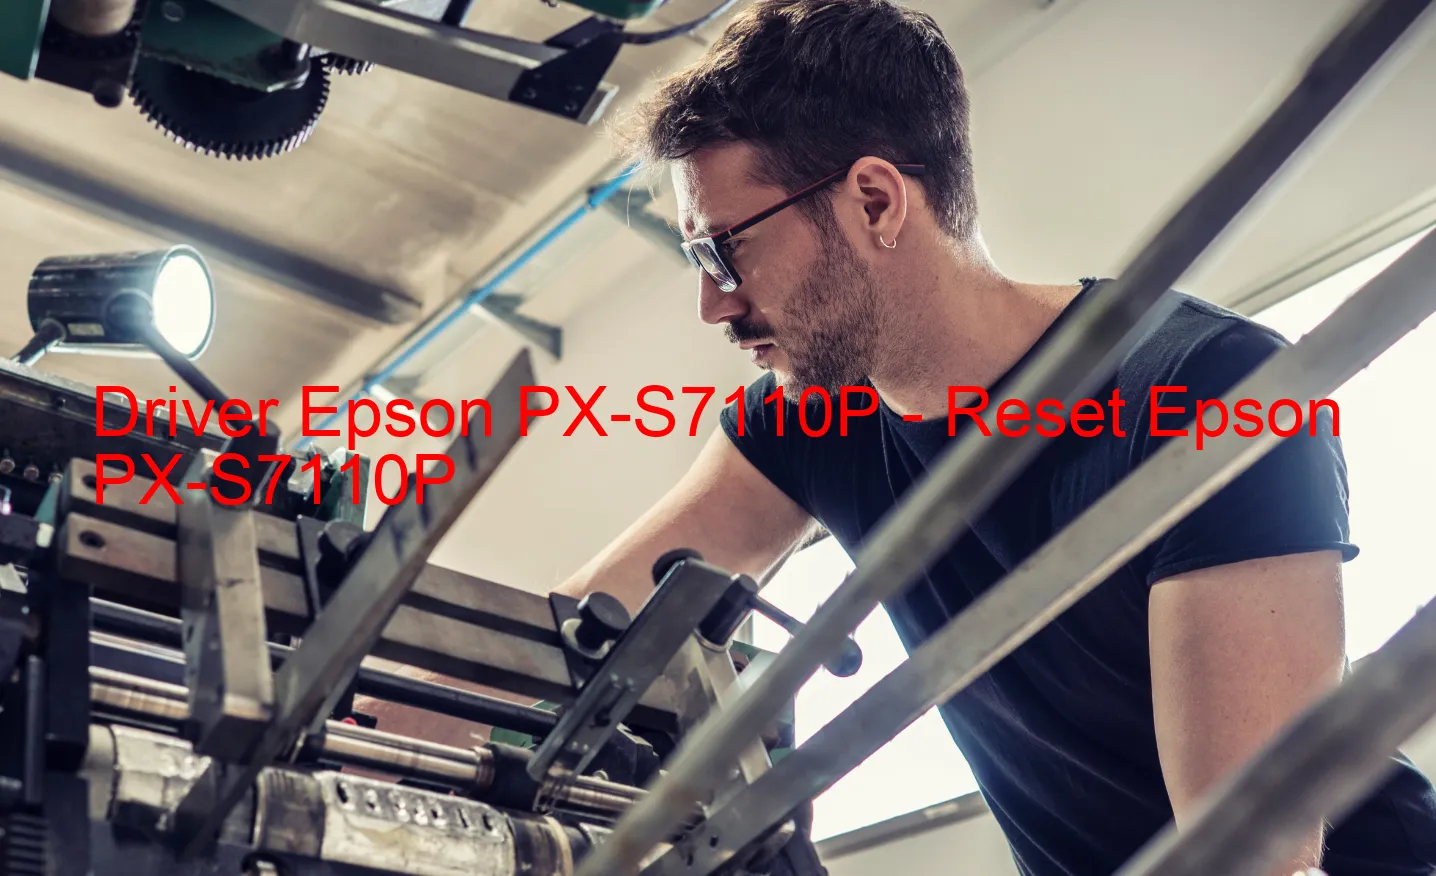 Epson PX-S7110Pのドライバー、Epson PX-S7110Pのリセットソフトウェア